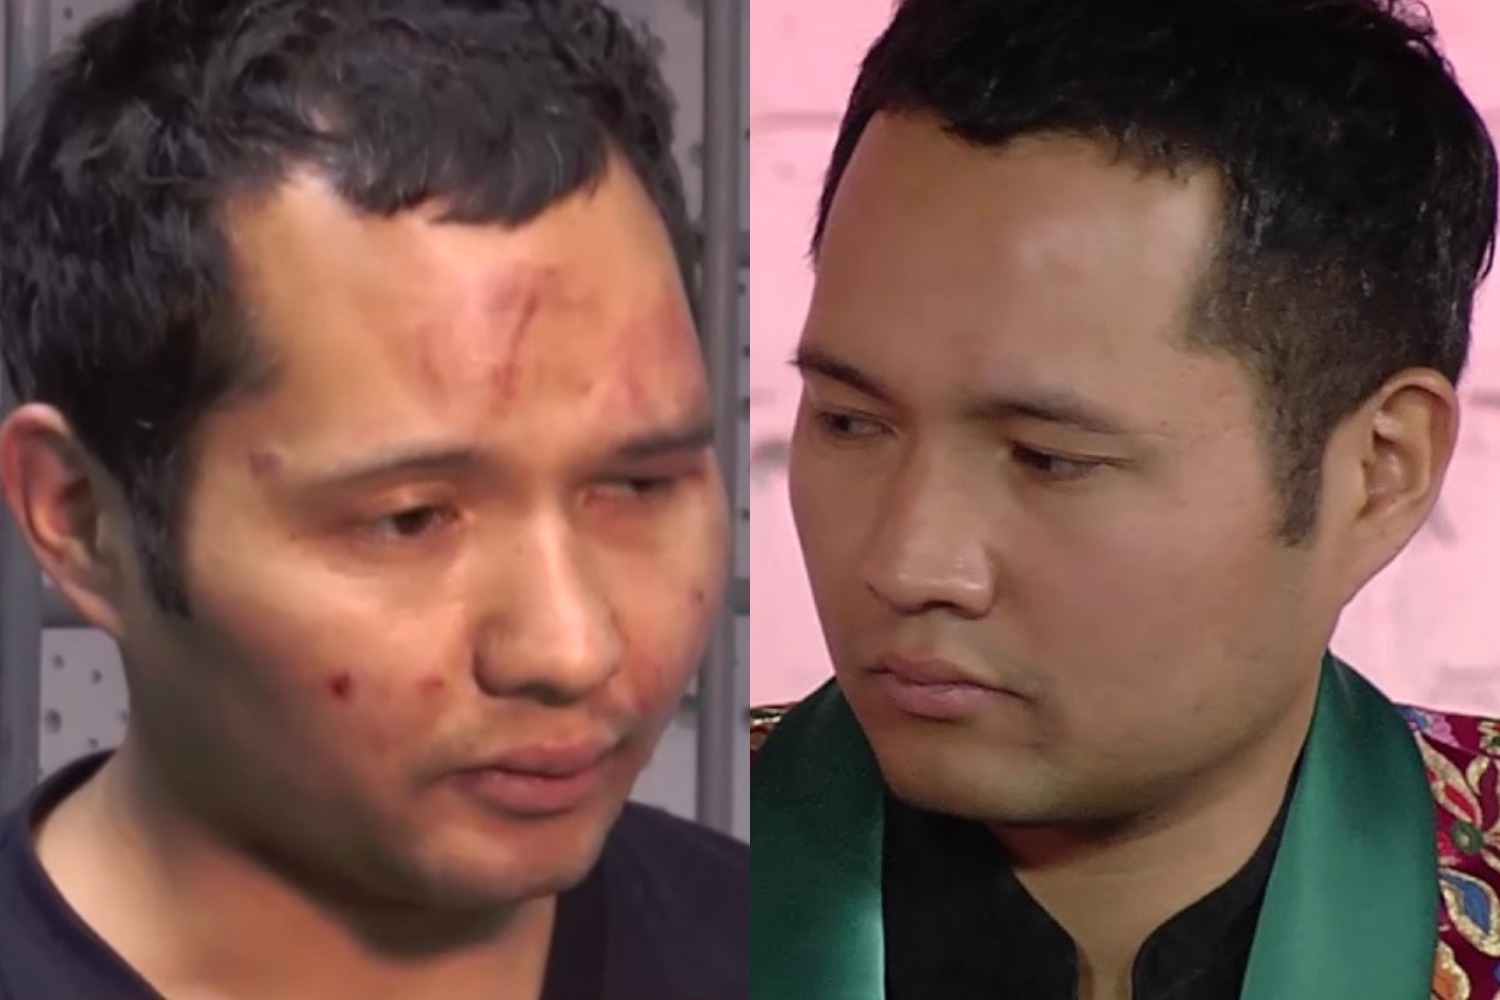 МВД Казахстана утверждает, что избитый мужчина на видео — некто Убуров, а не пианист Рузахунов. Но музыканта опознали родные